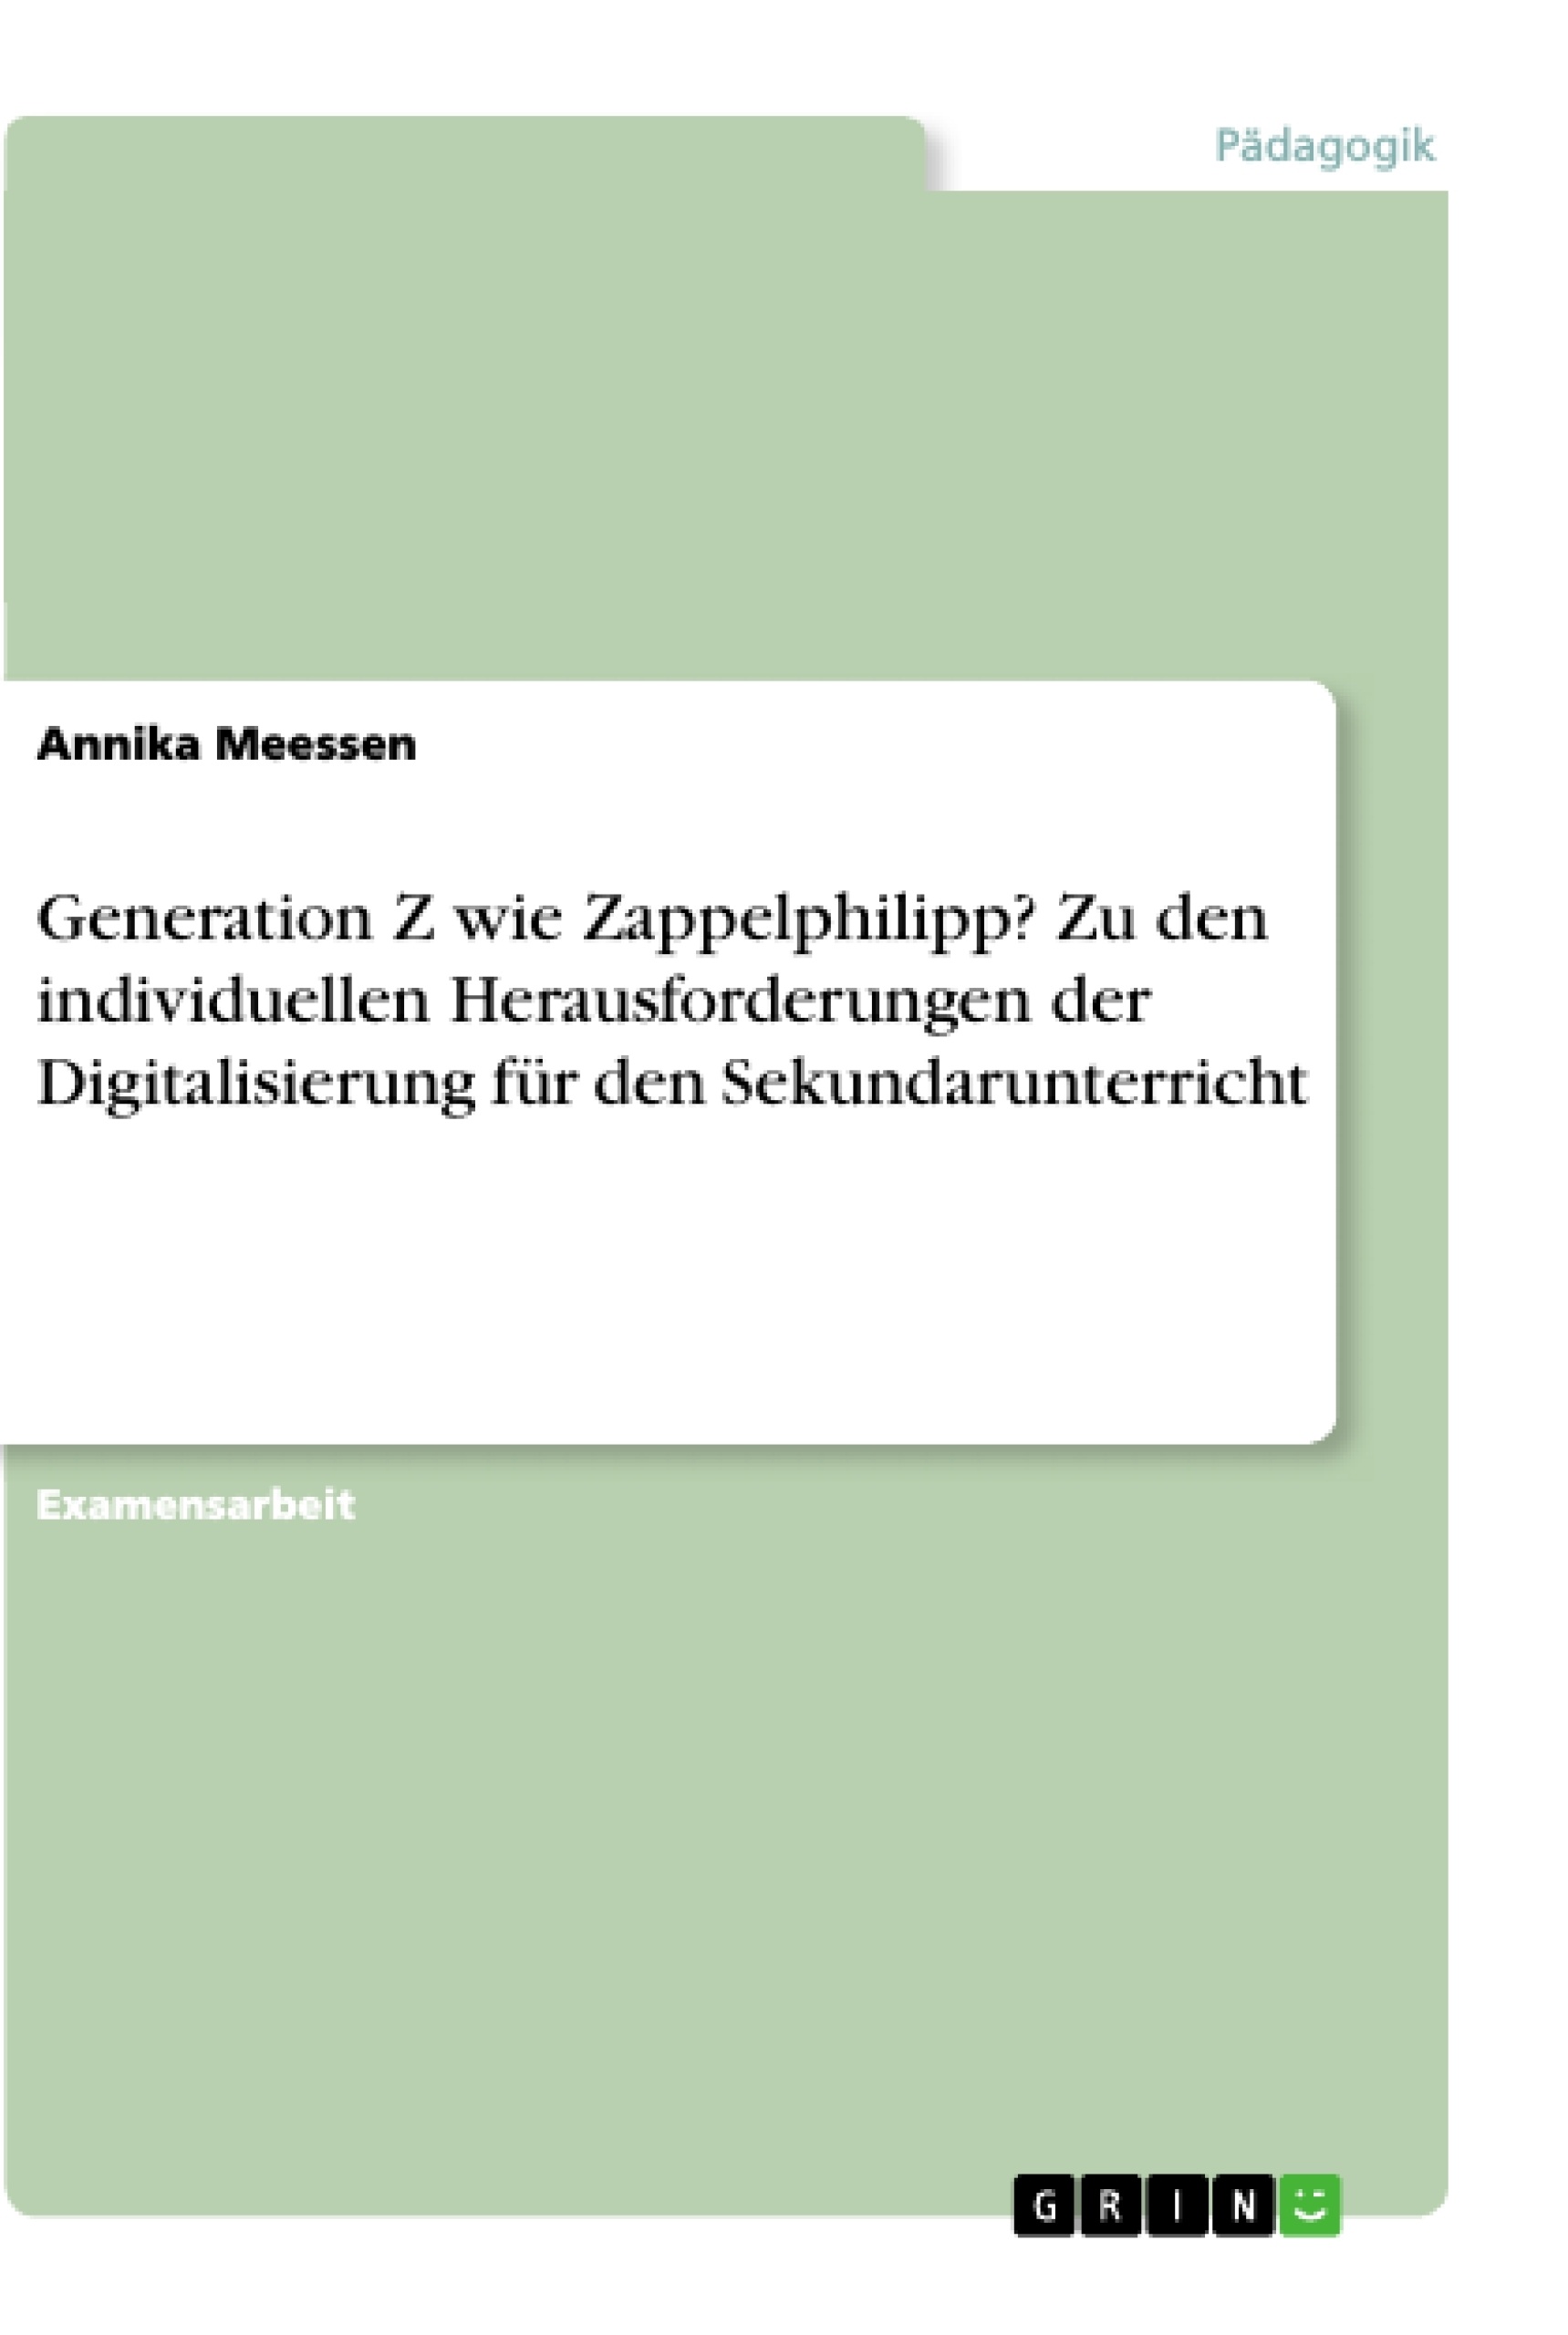 Title: Generation Z wie Zappelphilipp? Zu den individuellen Herausforderungen der Digitalisierung für den Sekundarunterricht